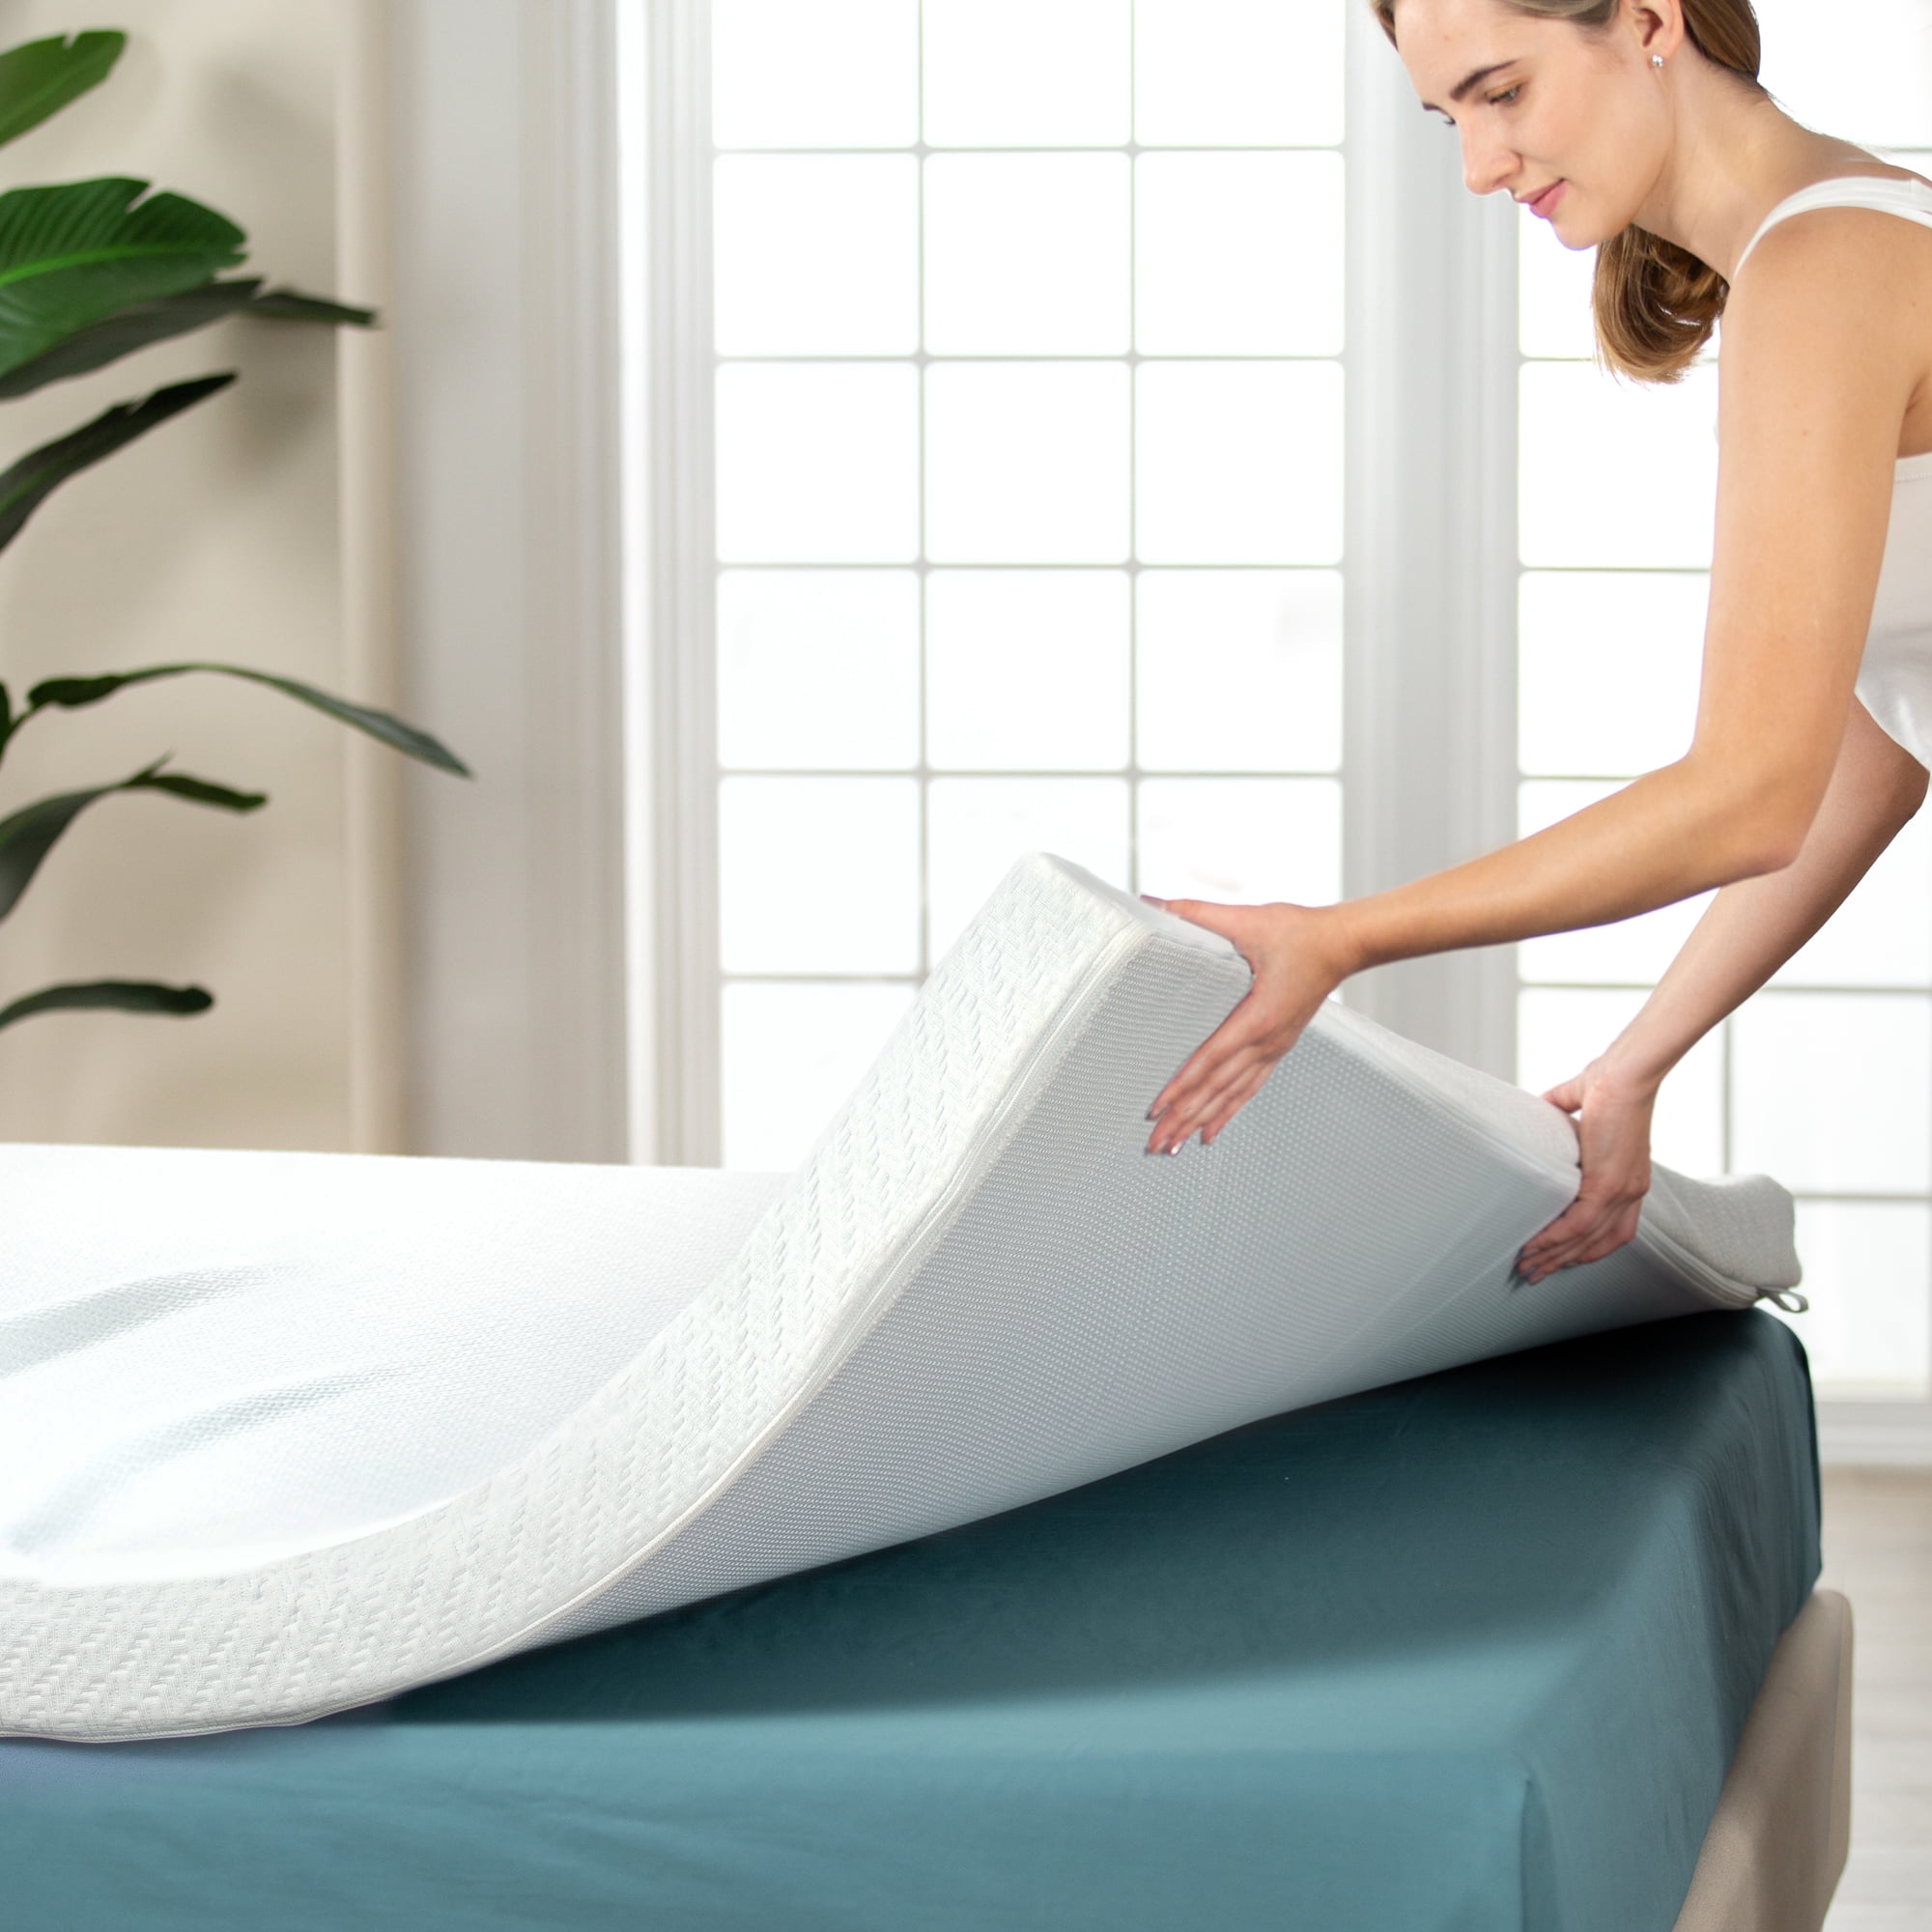 Elastic Latex Mattress Bamboo Charcoal Non-Toxic Sleeping Pad Bed Cushion USA 